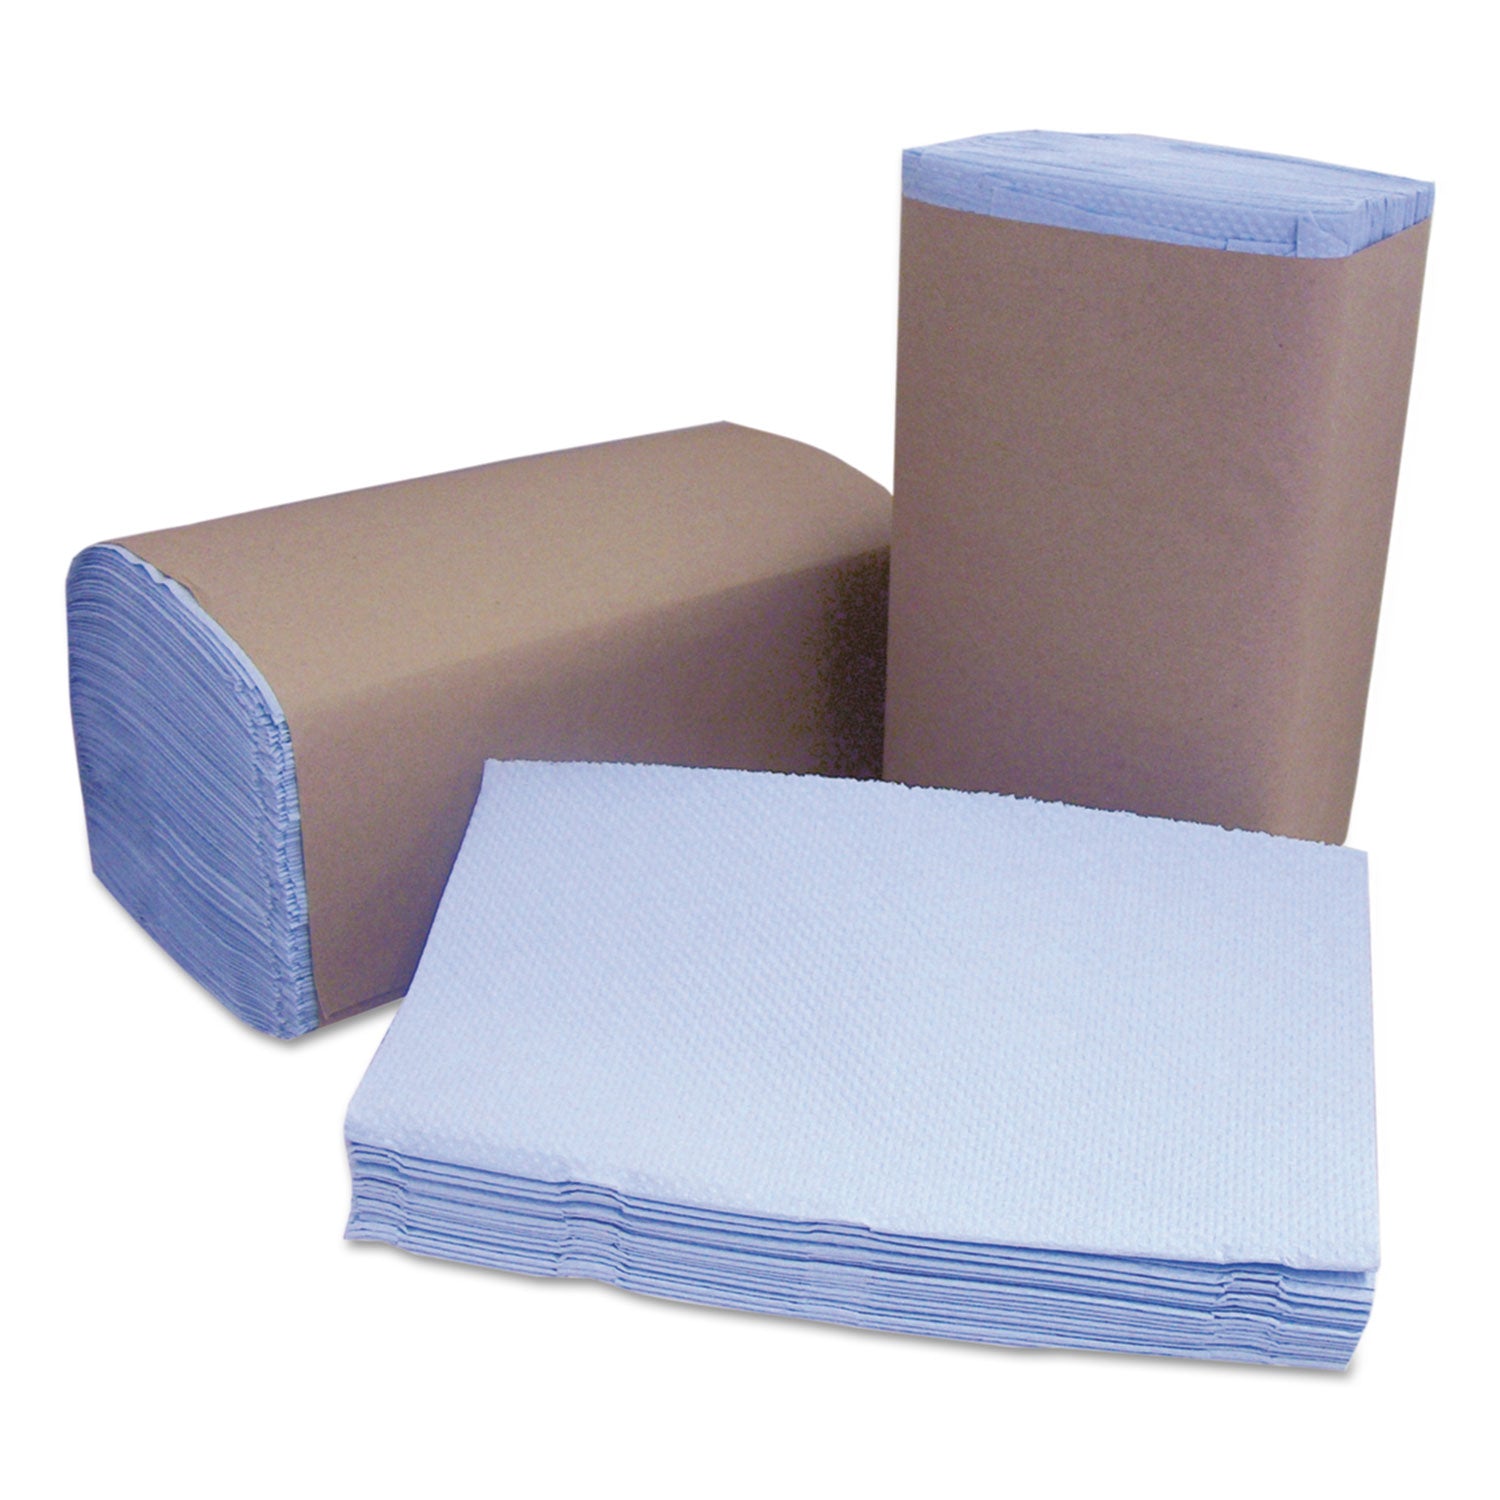 tuff-job-windshield-towels-2-ply-925-x-1025-blue-168-pack-12-packs-carton_csdw120 - 1